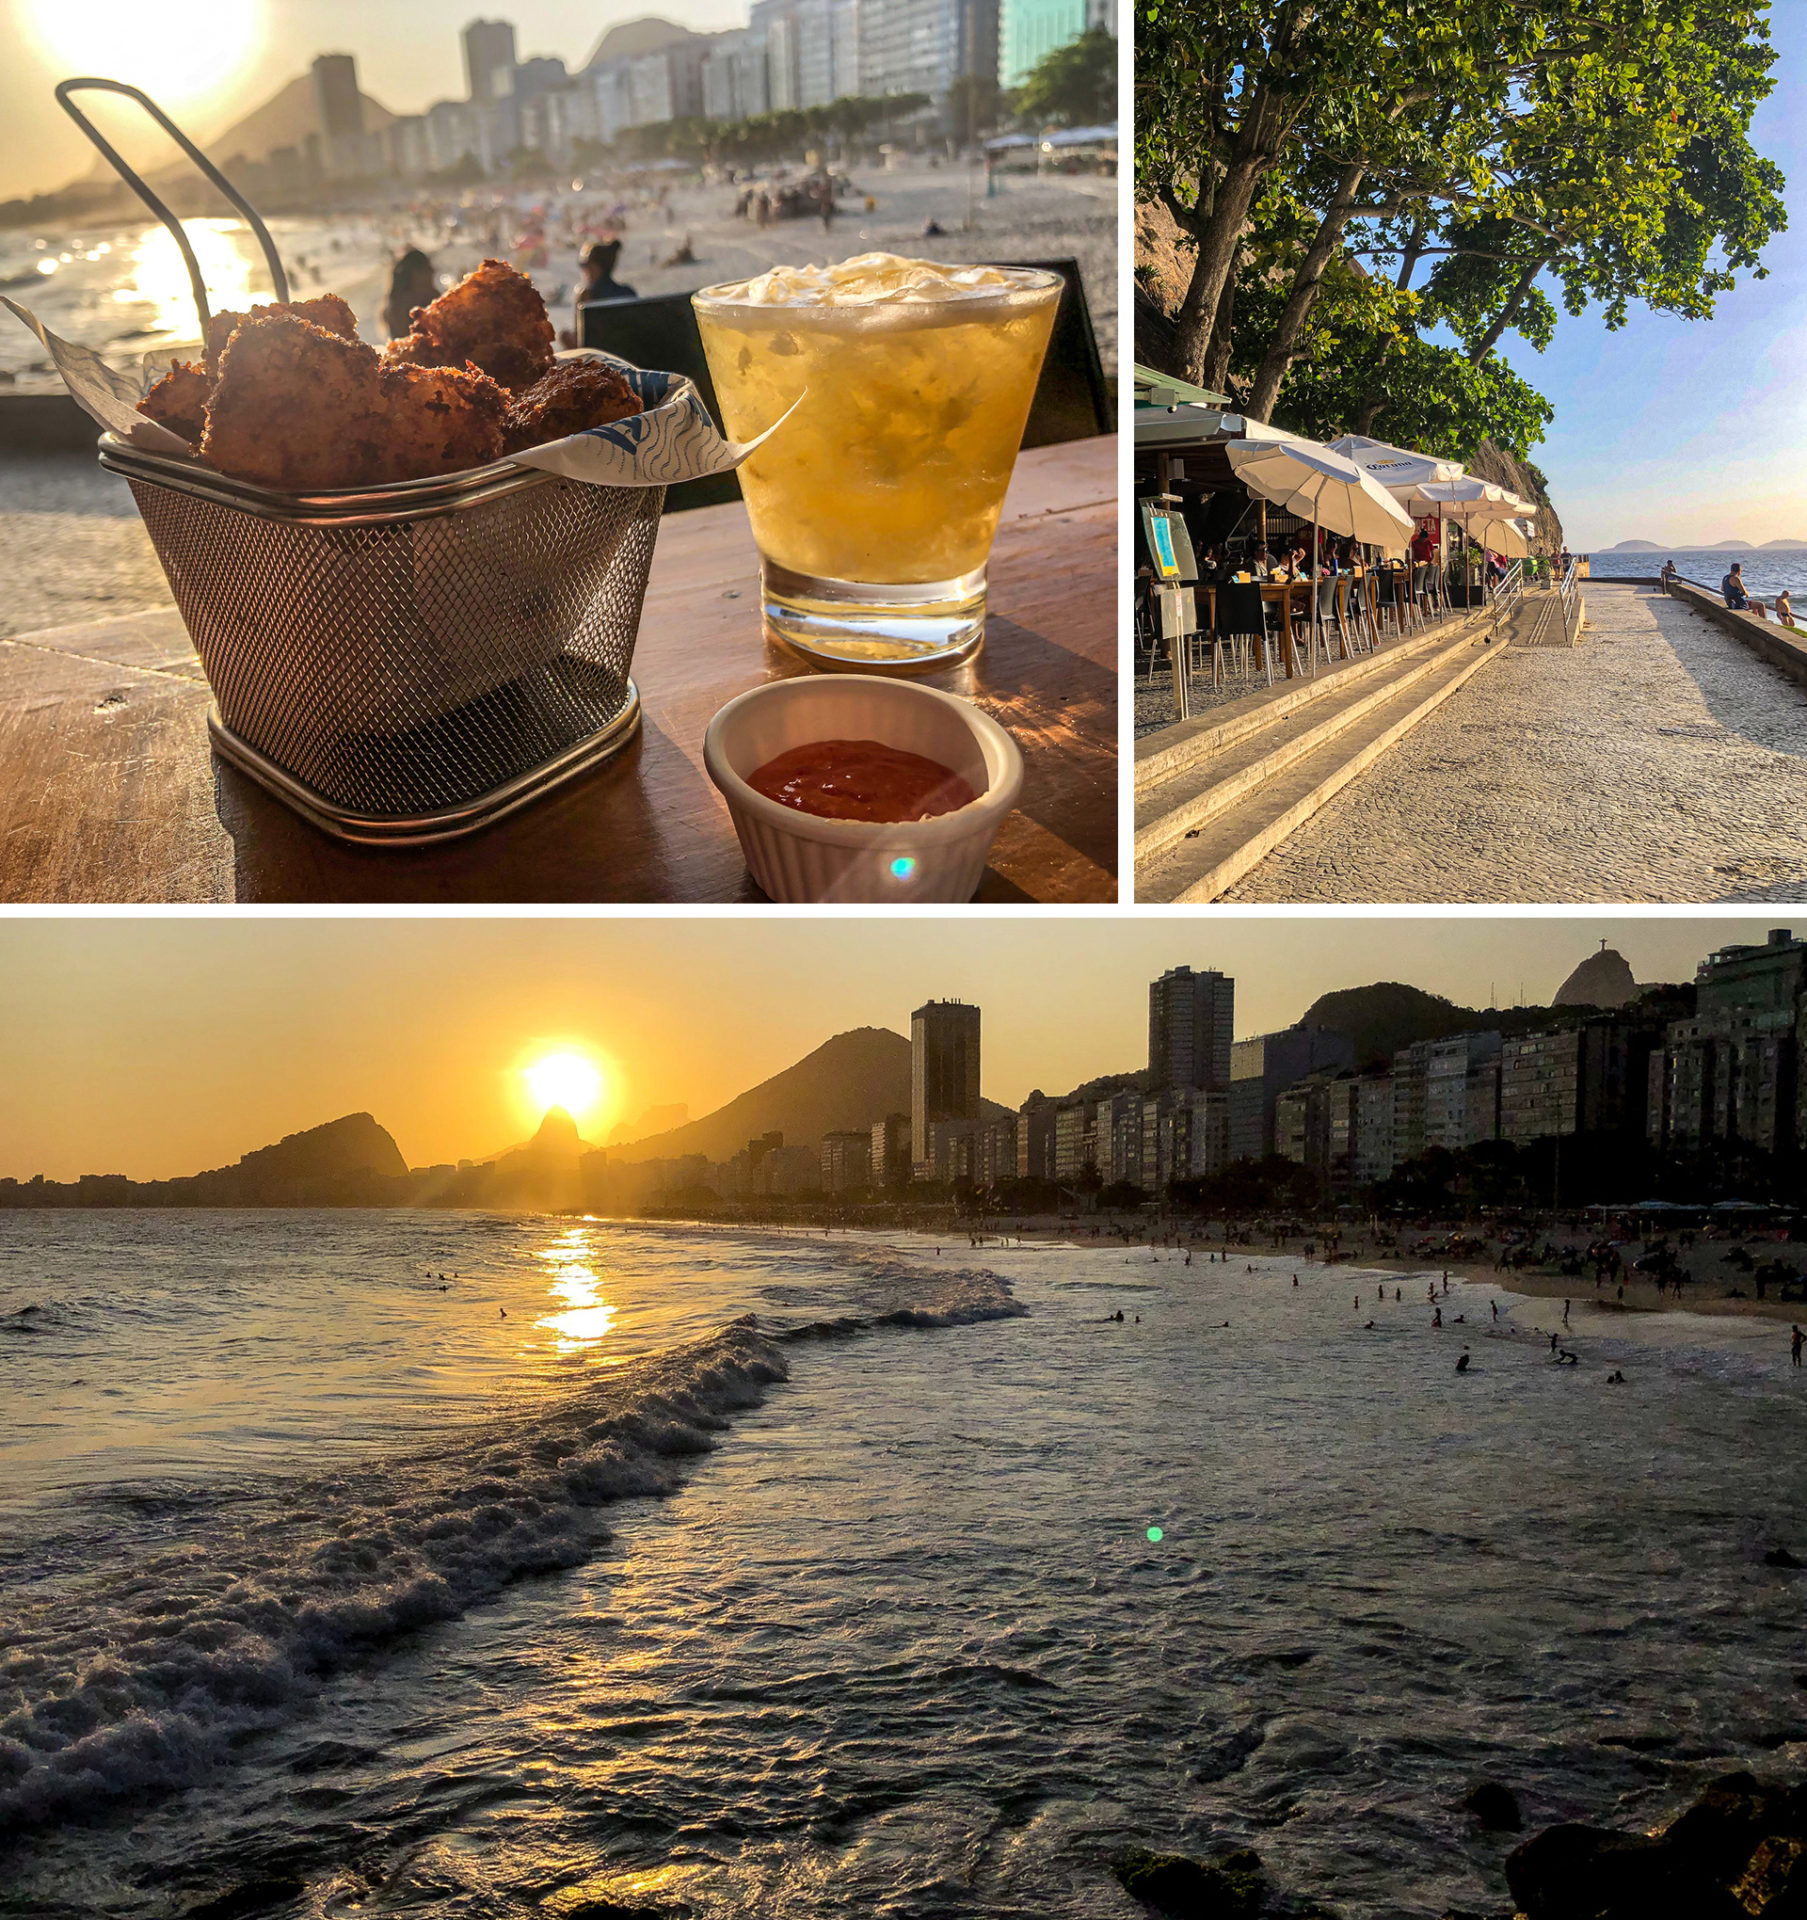 HOTEL FAZENDA ALL INCLUSIVE no Rio de Janeiro, para comer e beber a vo